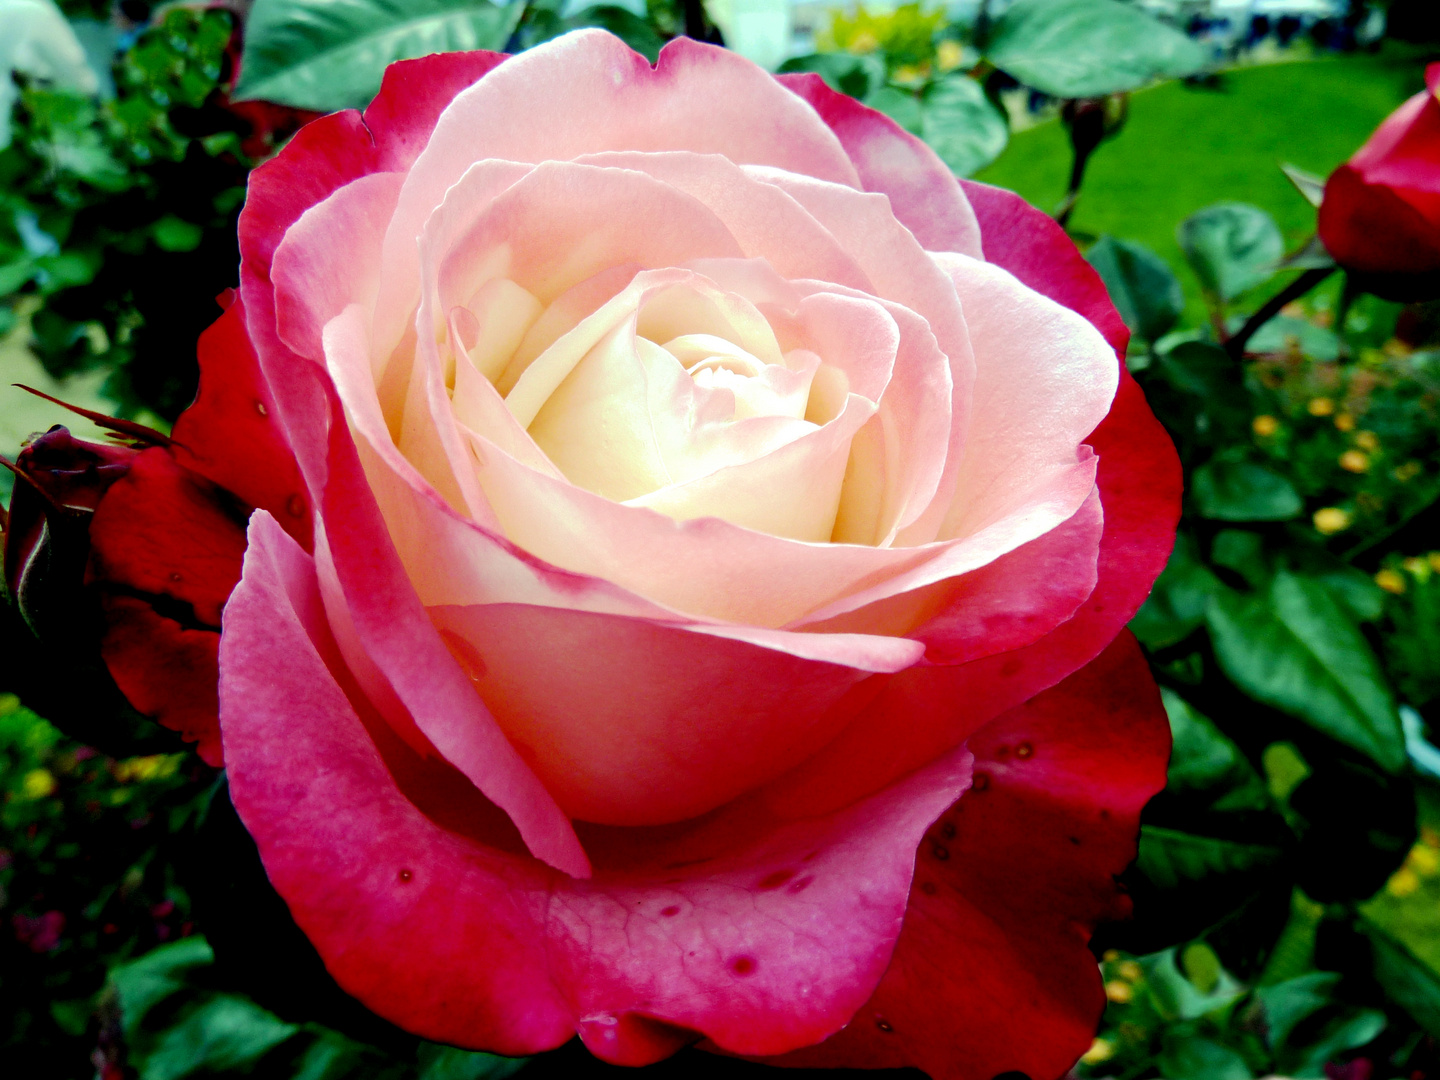 Königin der Blumen - wunderschöne Rosenblüte